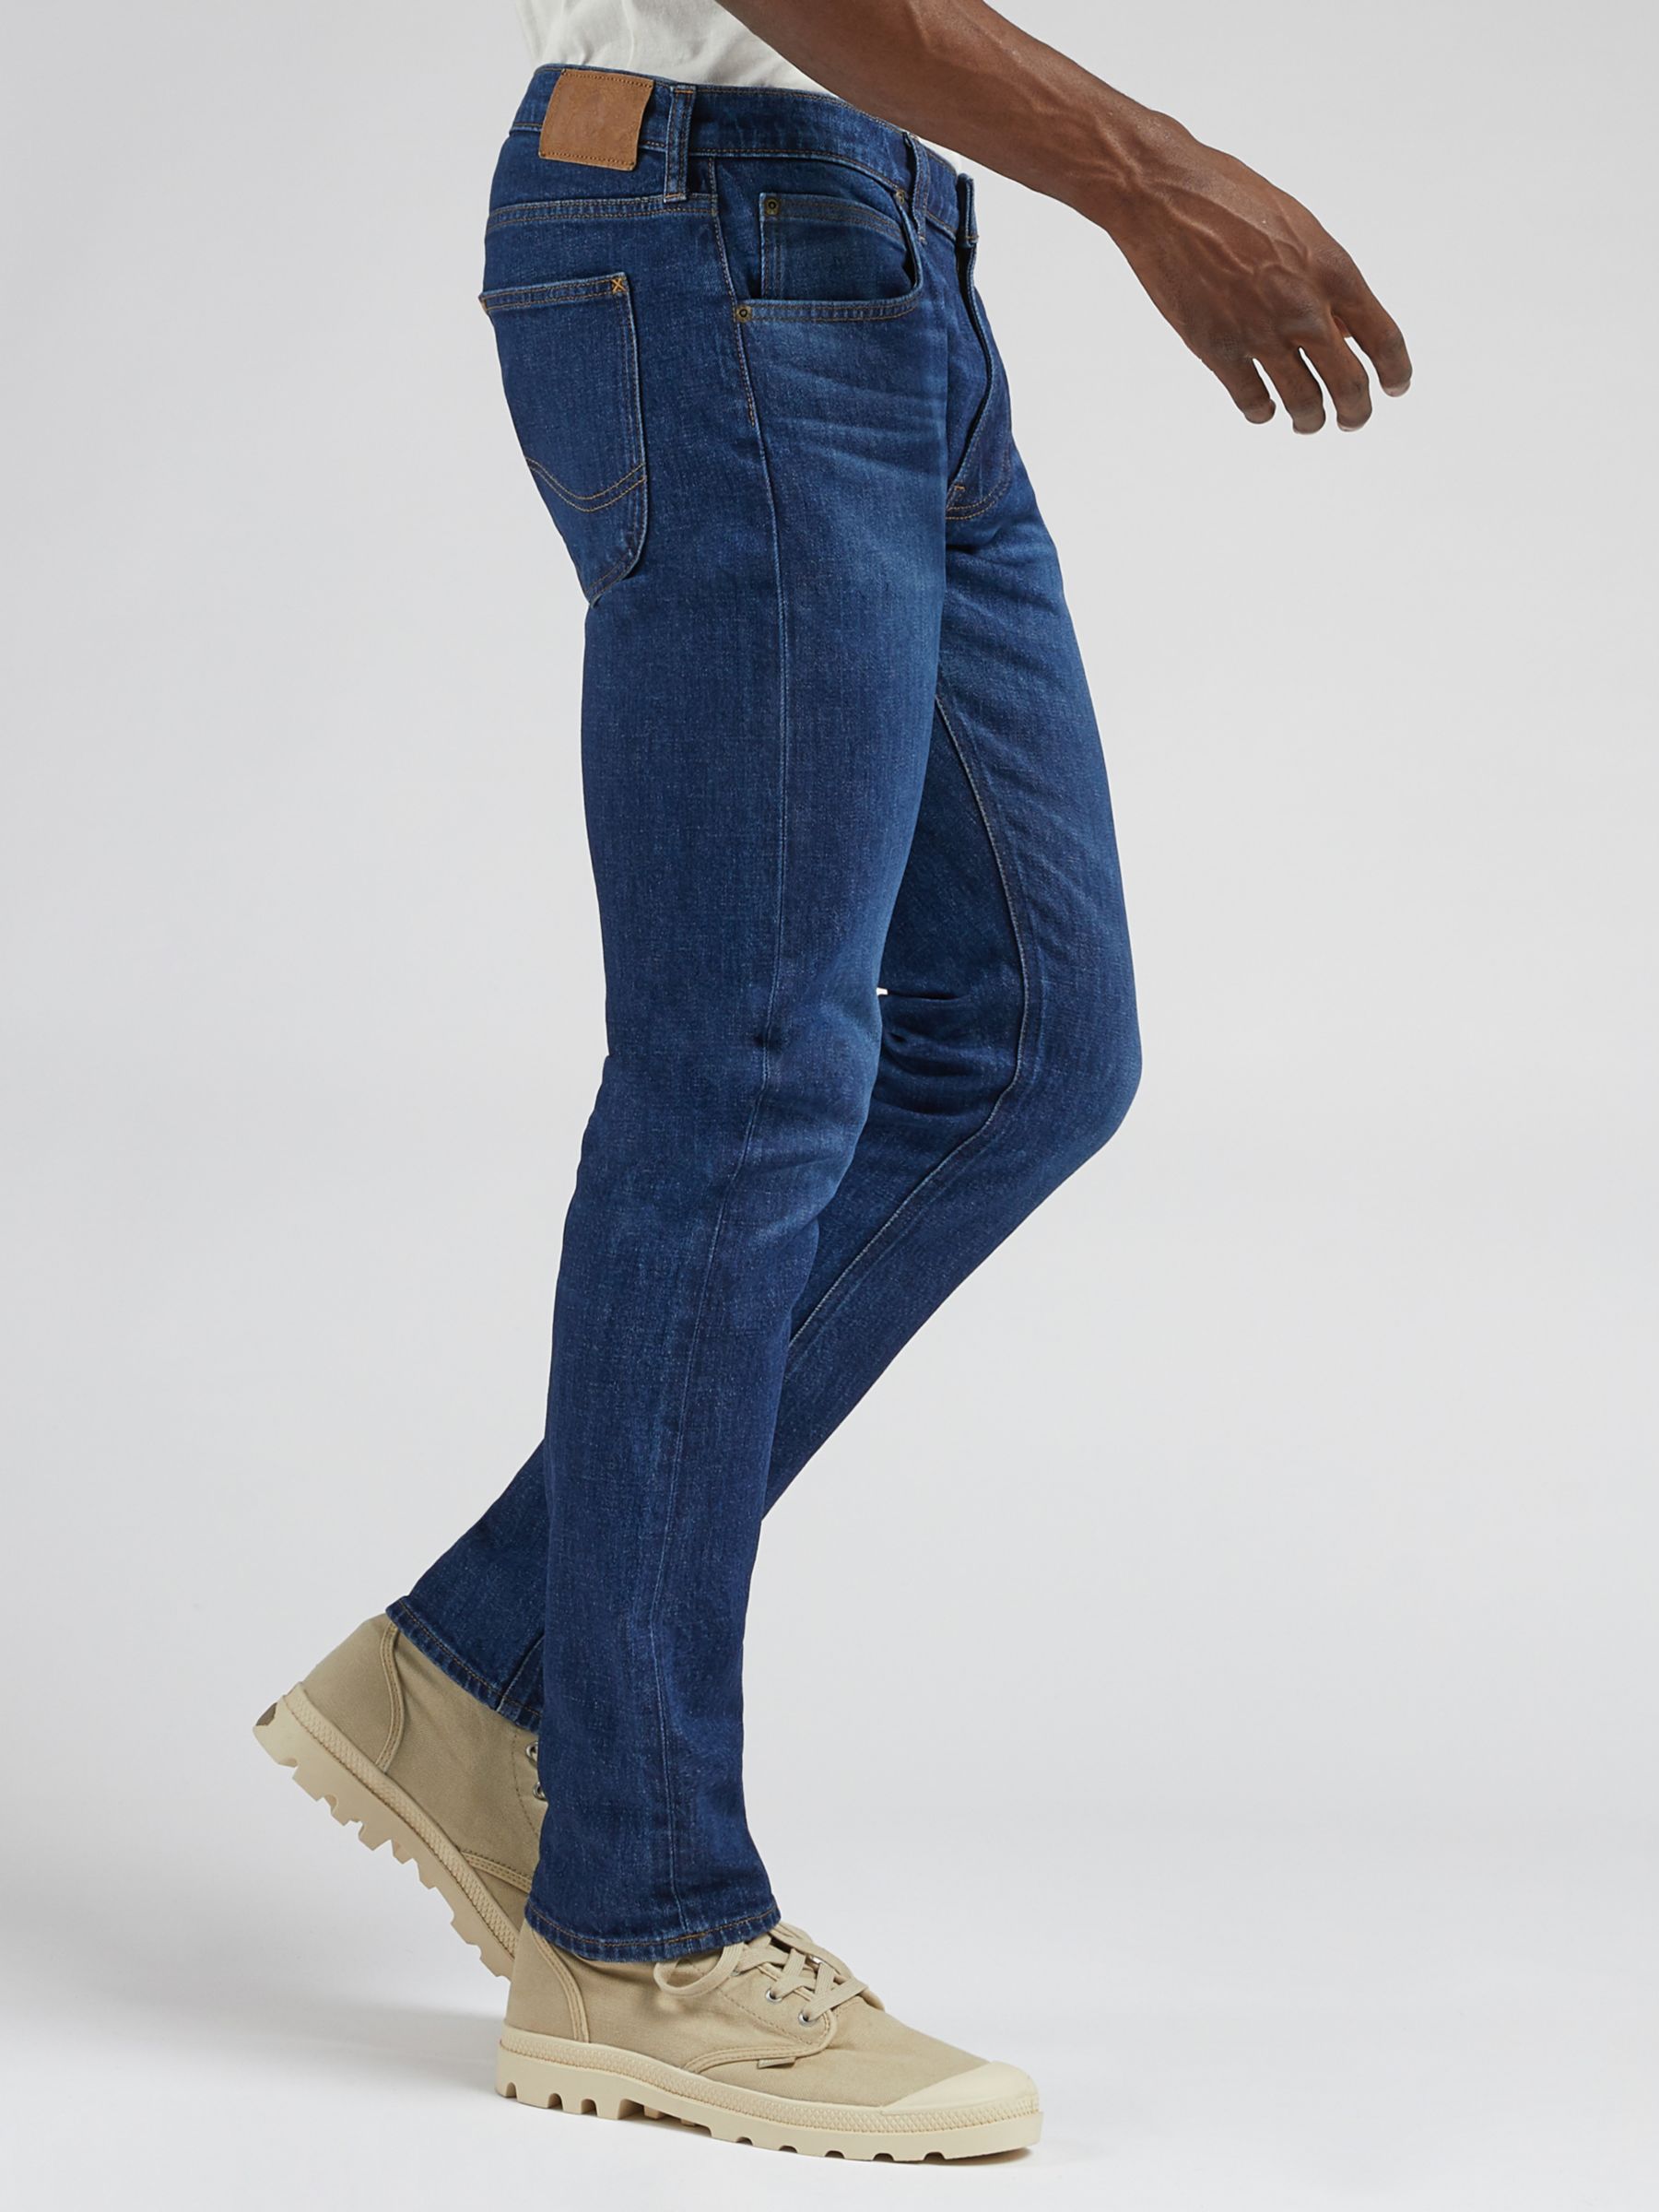 Lee Luke Dark Worn Slim Fit Jeans, Blue, 30S